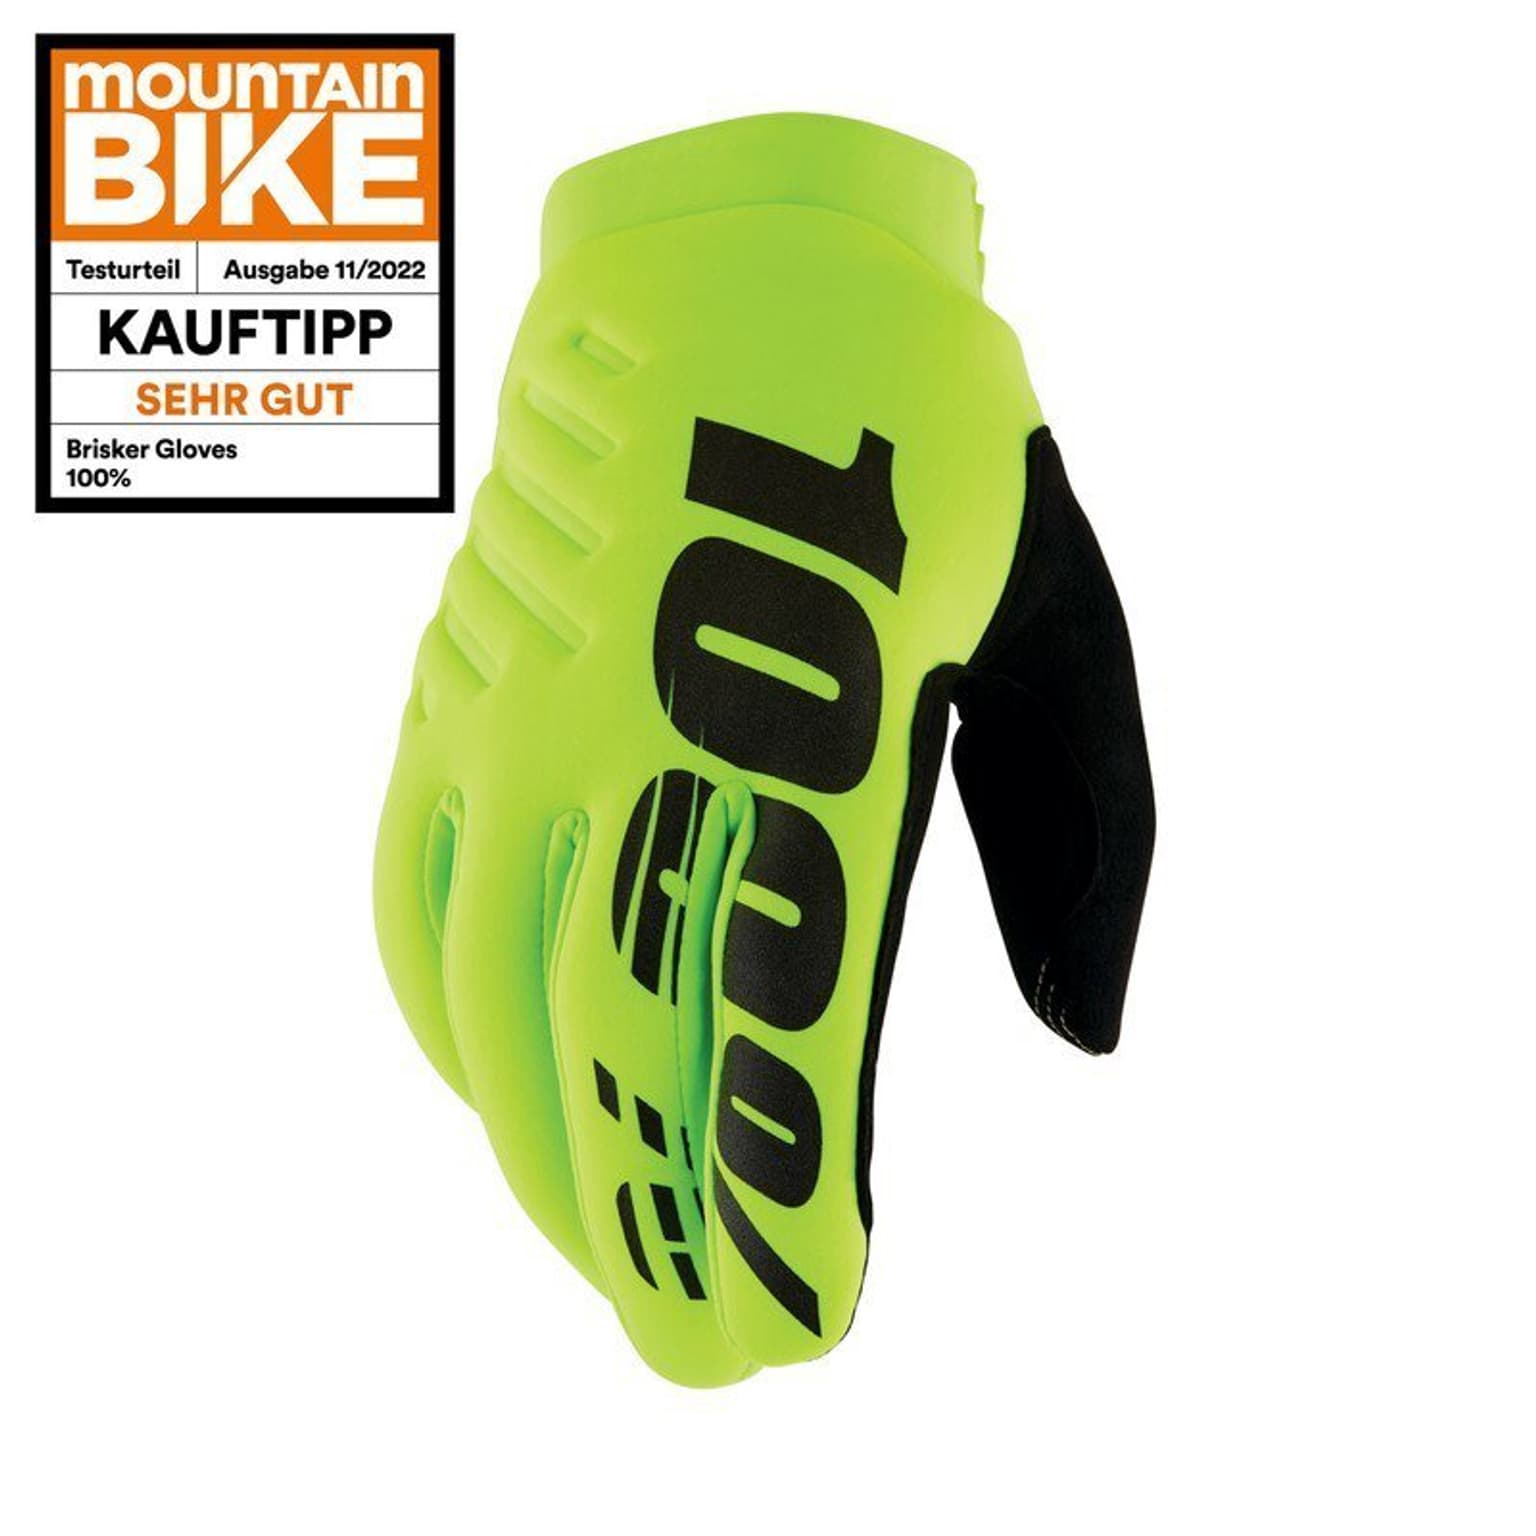 100% 100% Brisker Youth Bike-Handschuhe neongelb 1